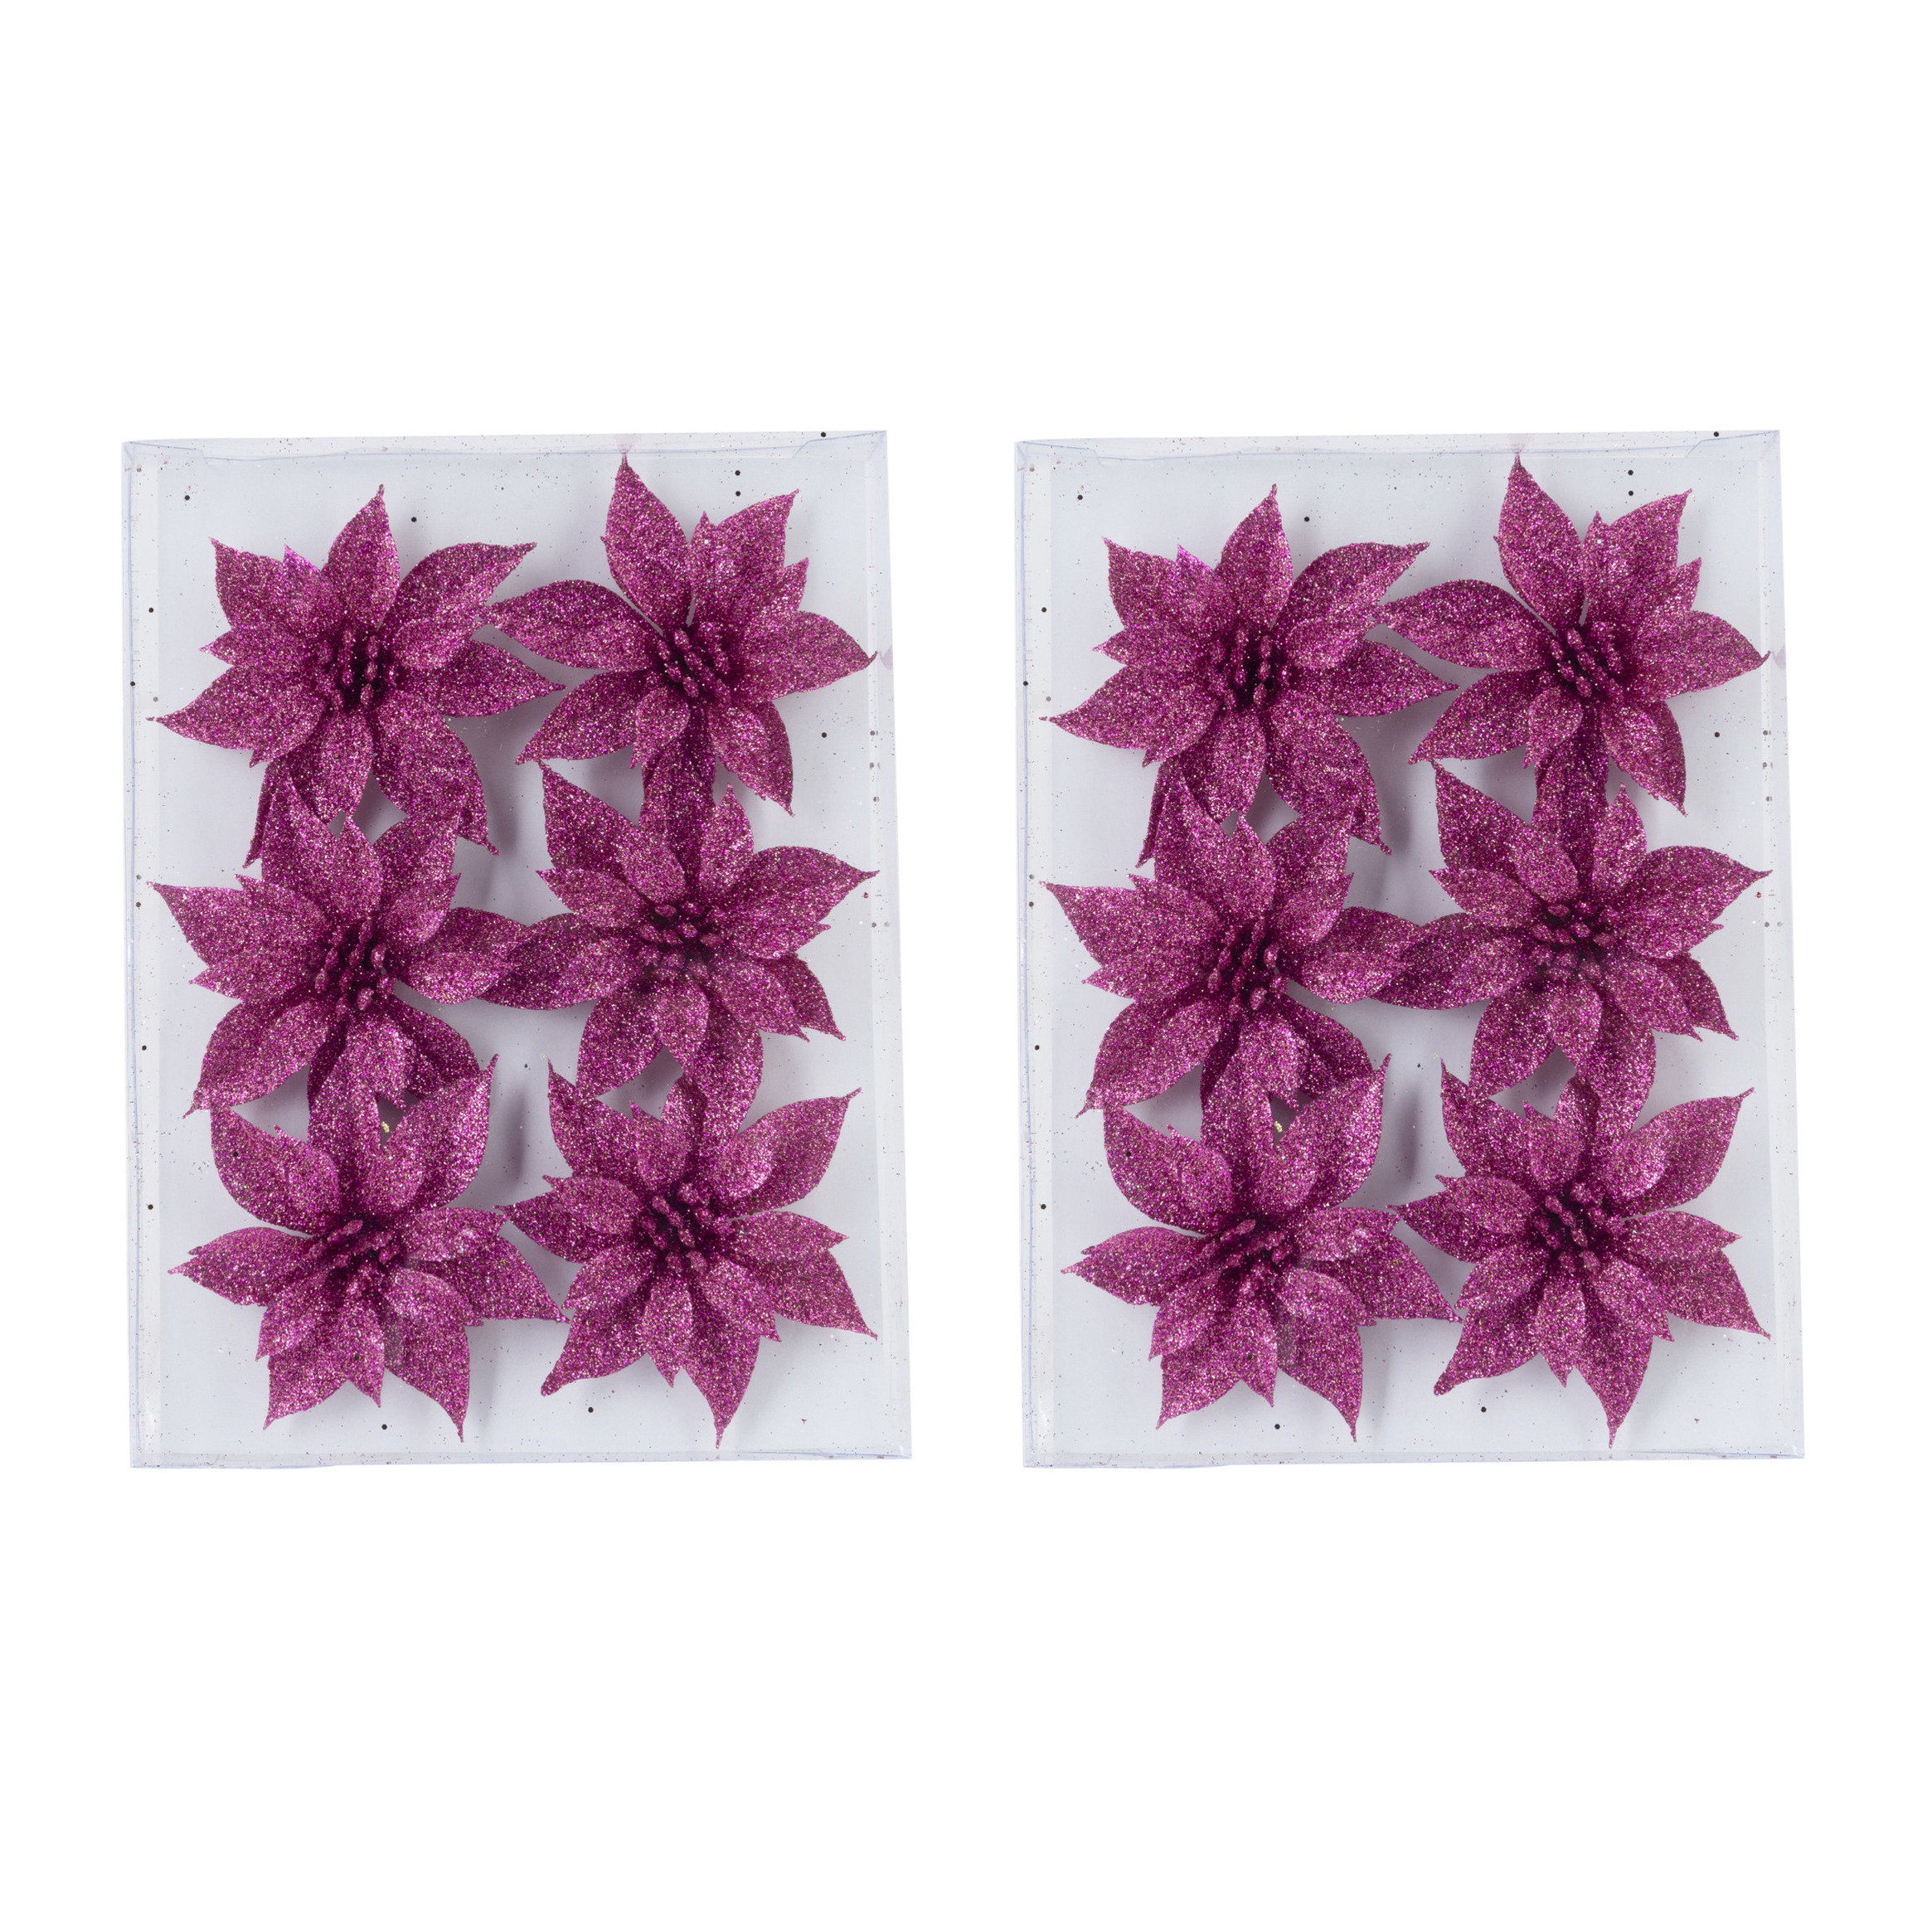 12x stuks decoratie bloemen rozen fuchsia roze glitter op ijzerdraad 8 cm